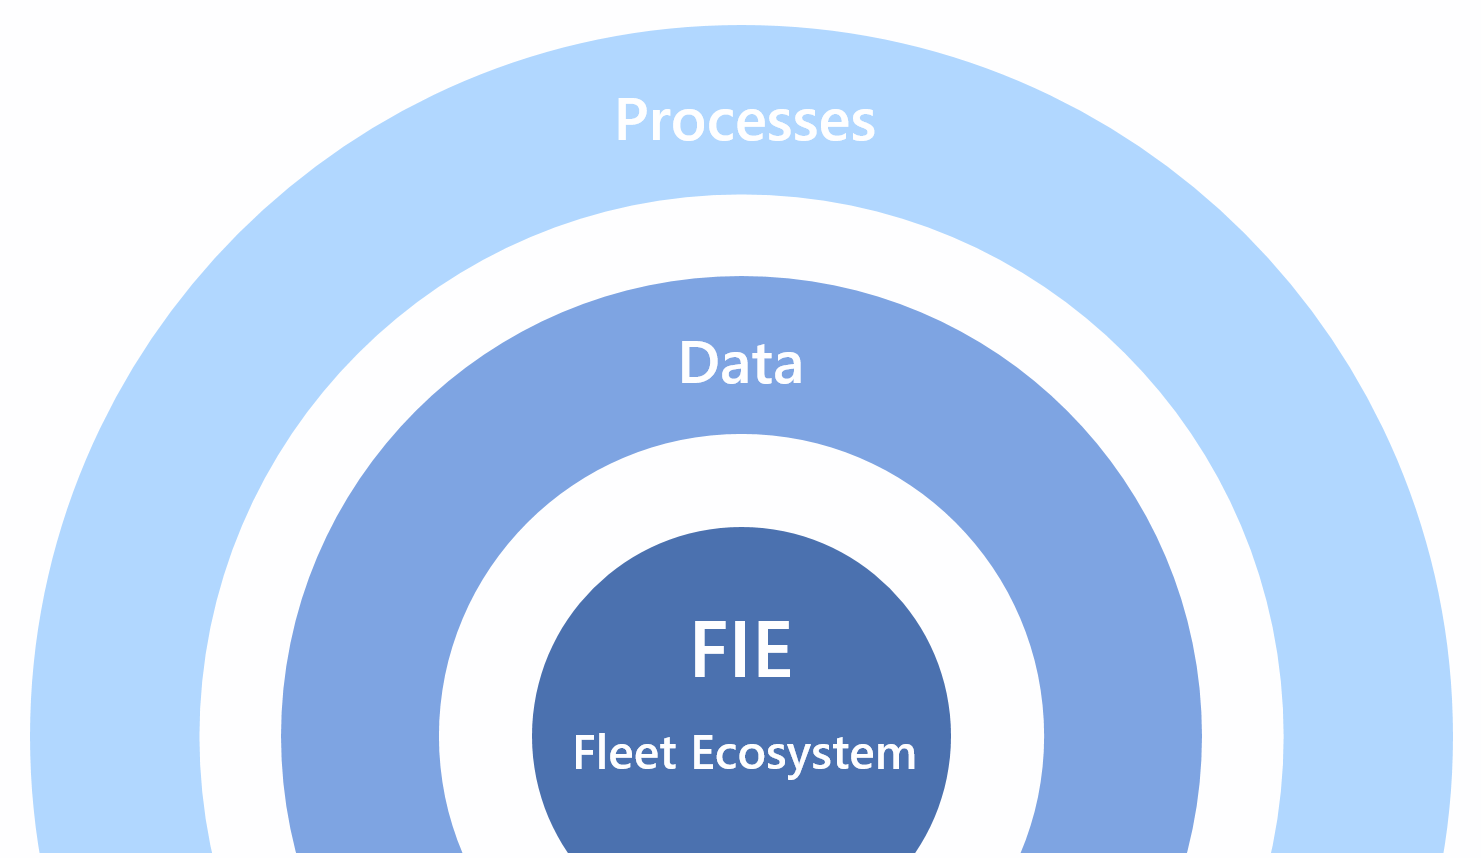 FIE Fleet Ecosystem